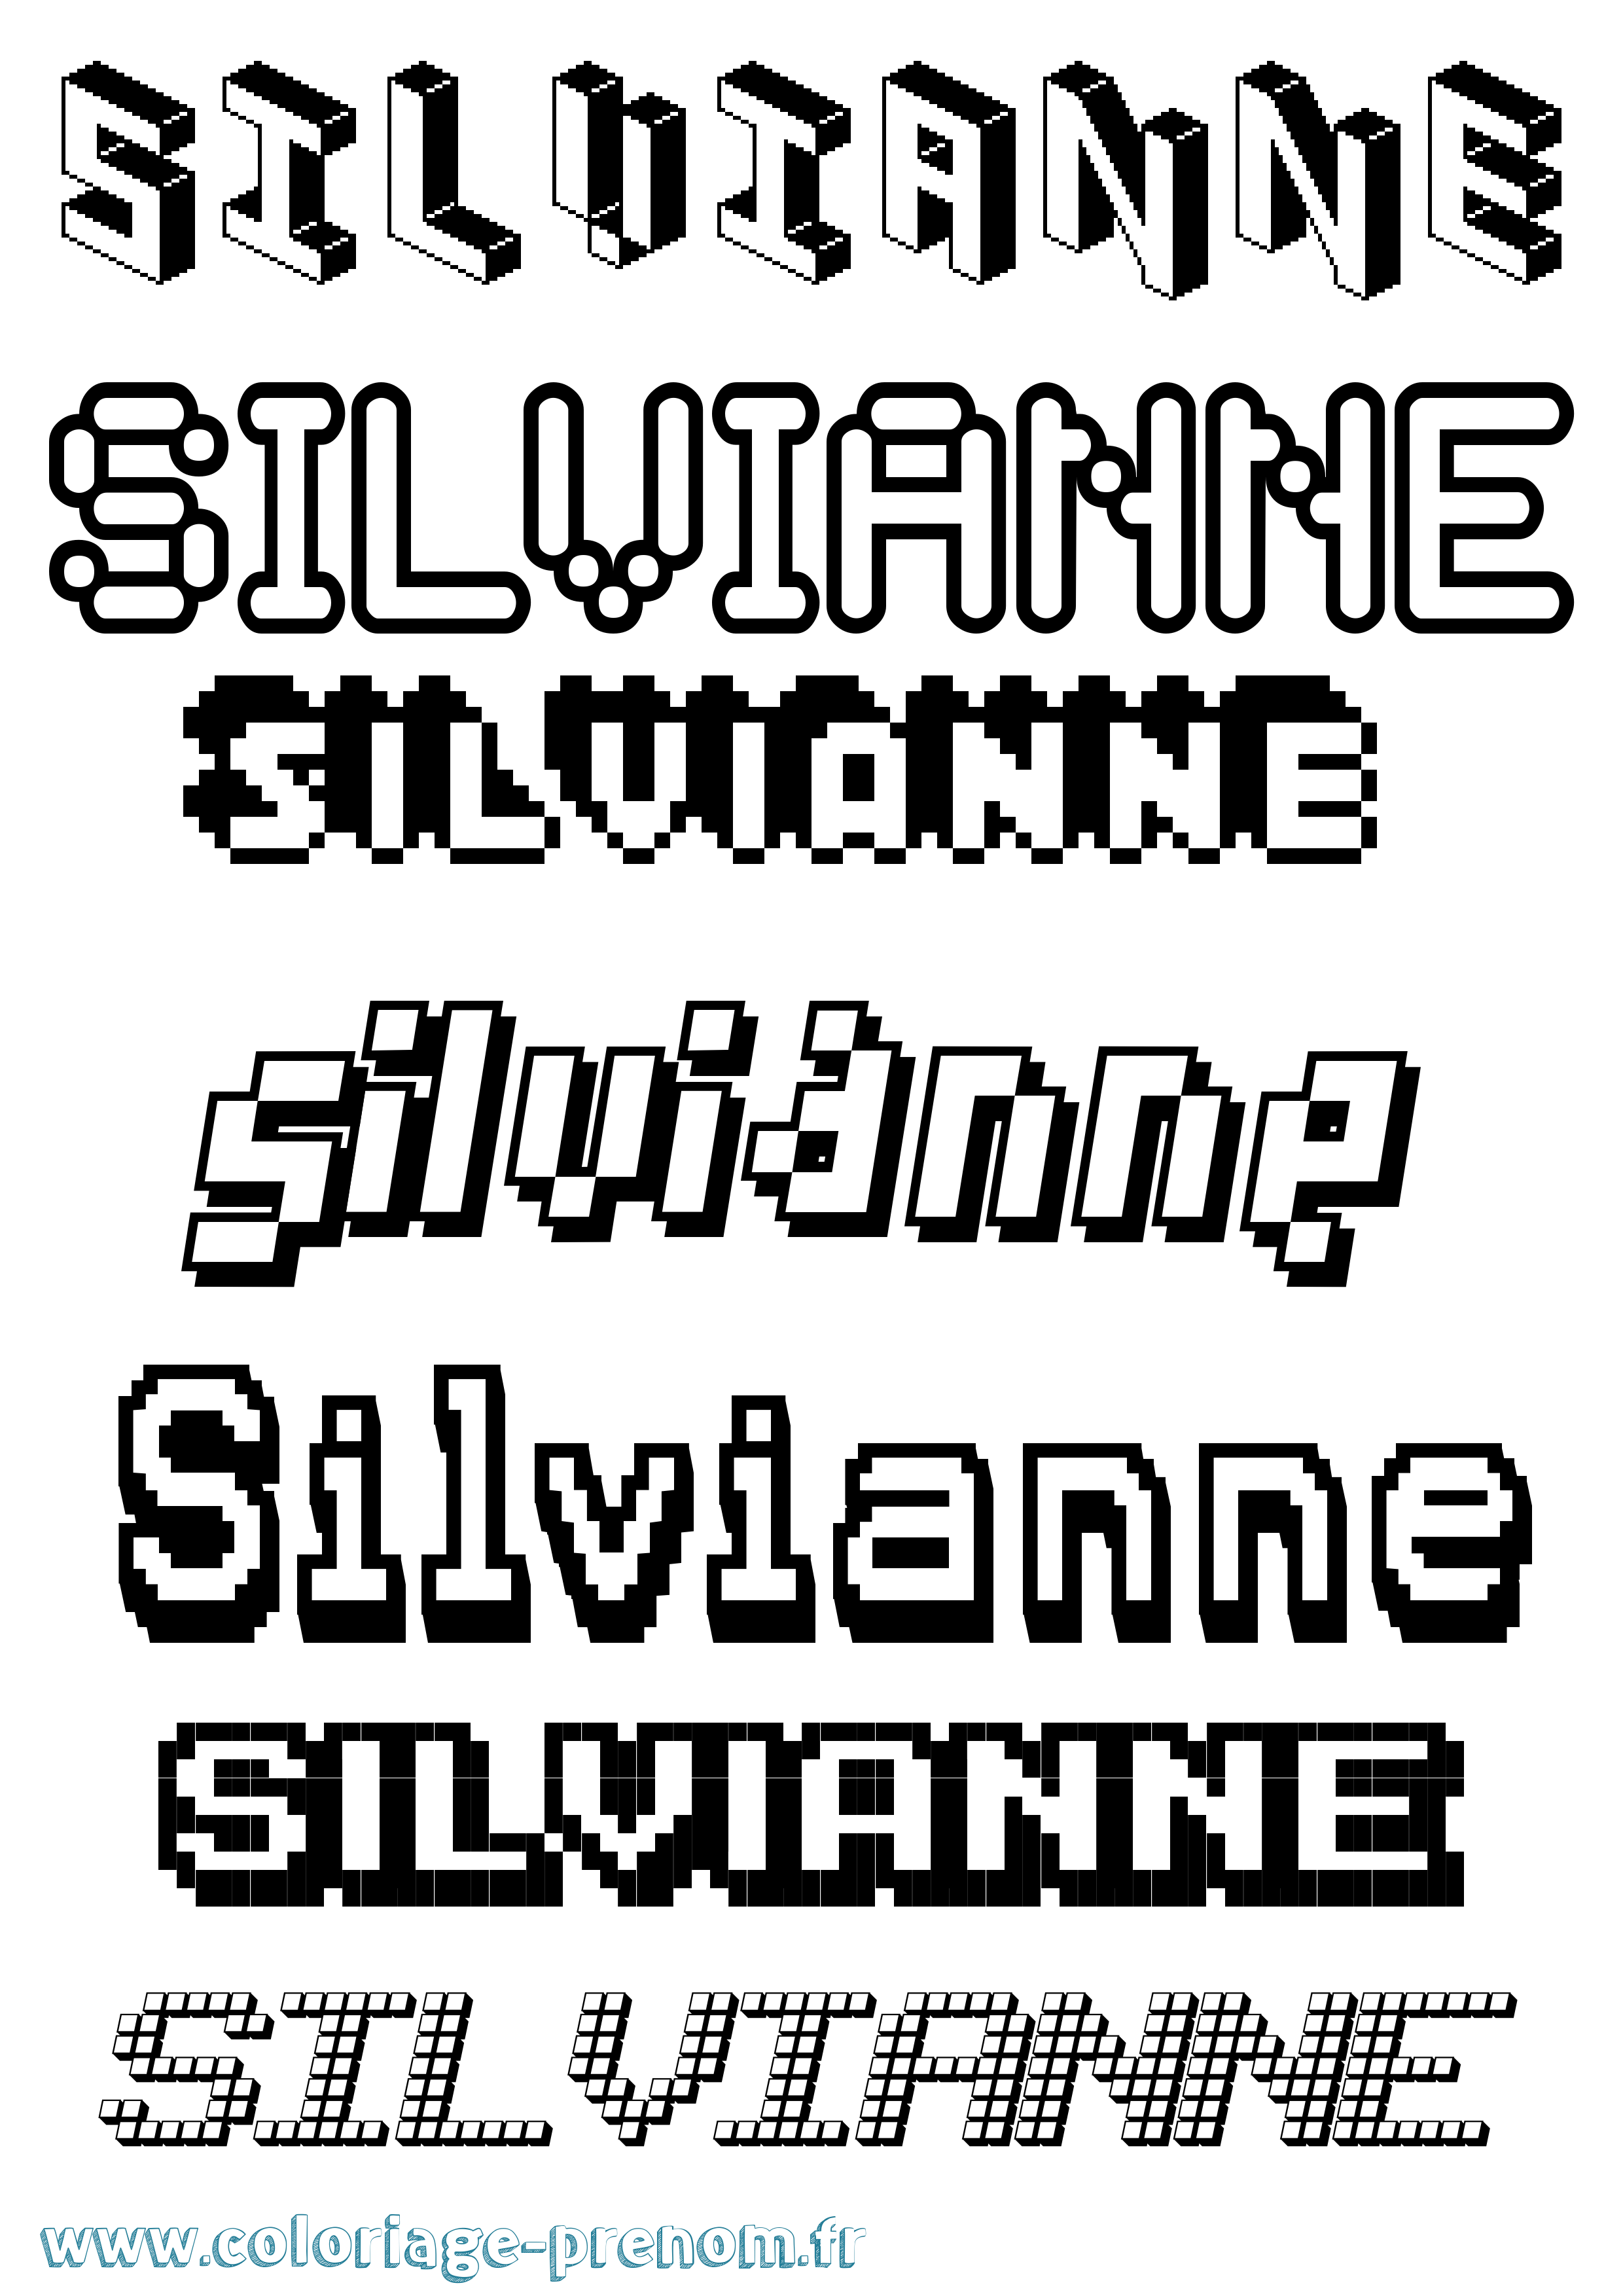 Coloriage prénom Silvianne Pixel